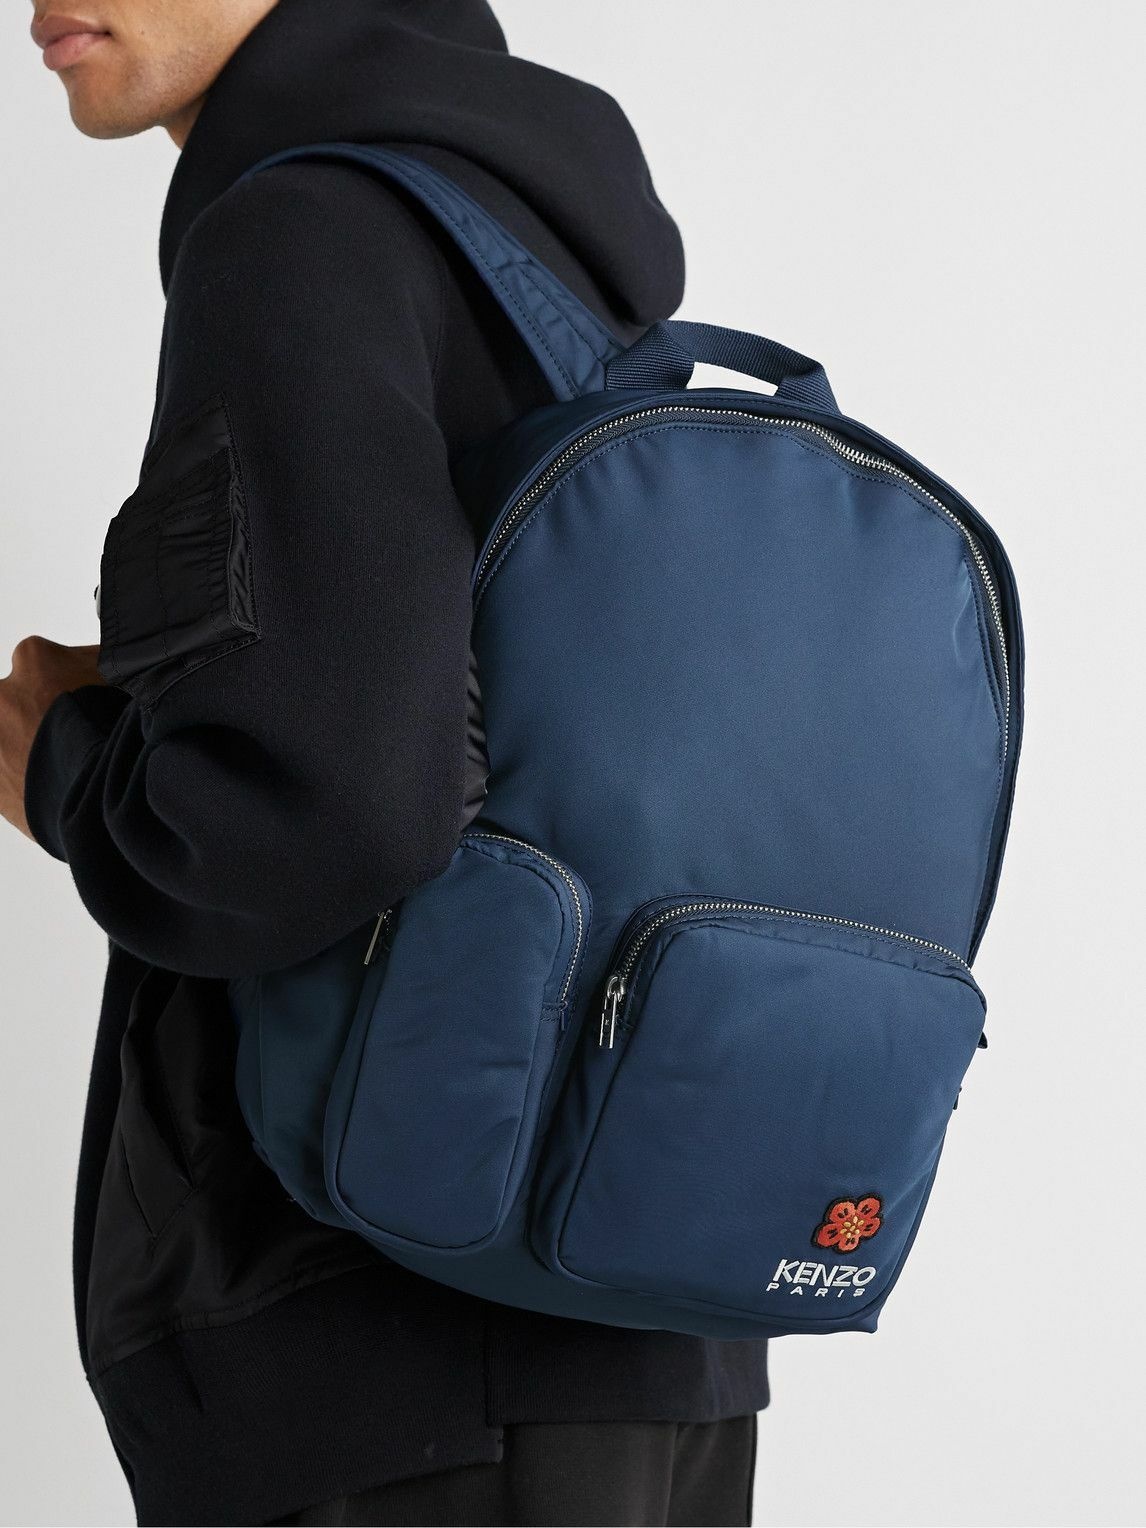 KENZO Crest Appliquéd Logo-Embroidered Canvas Backpack for Men